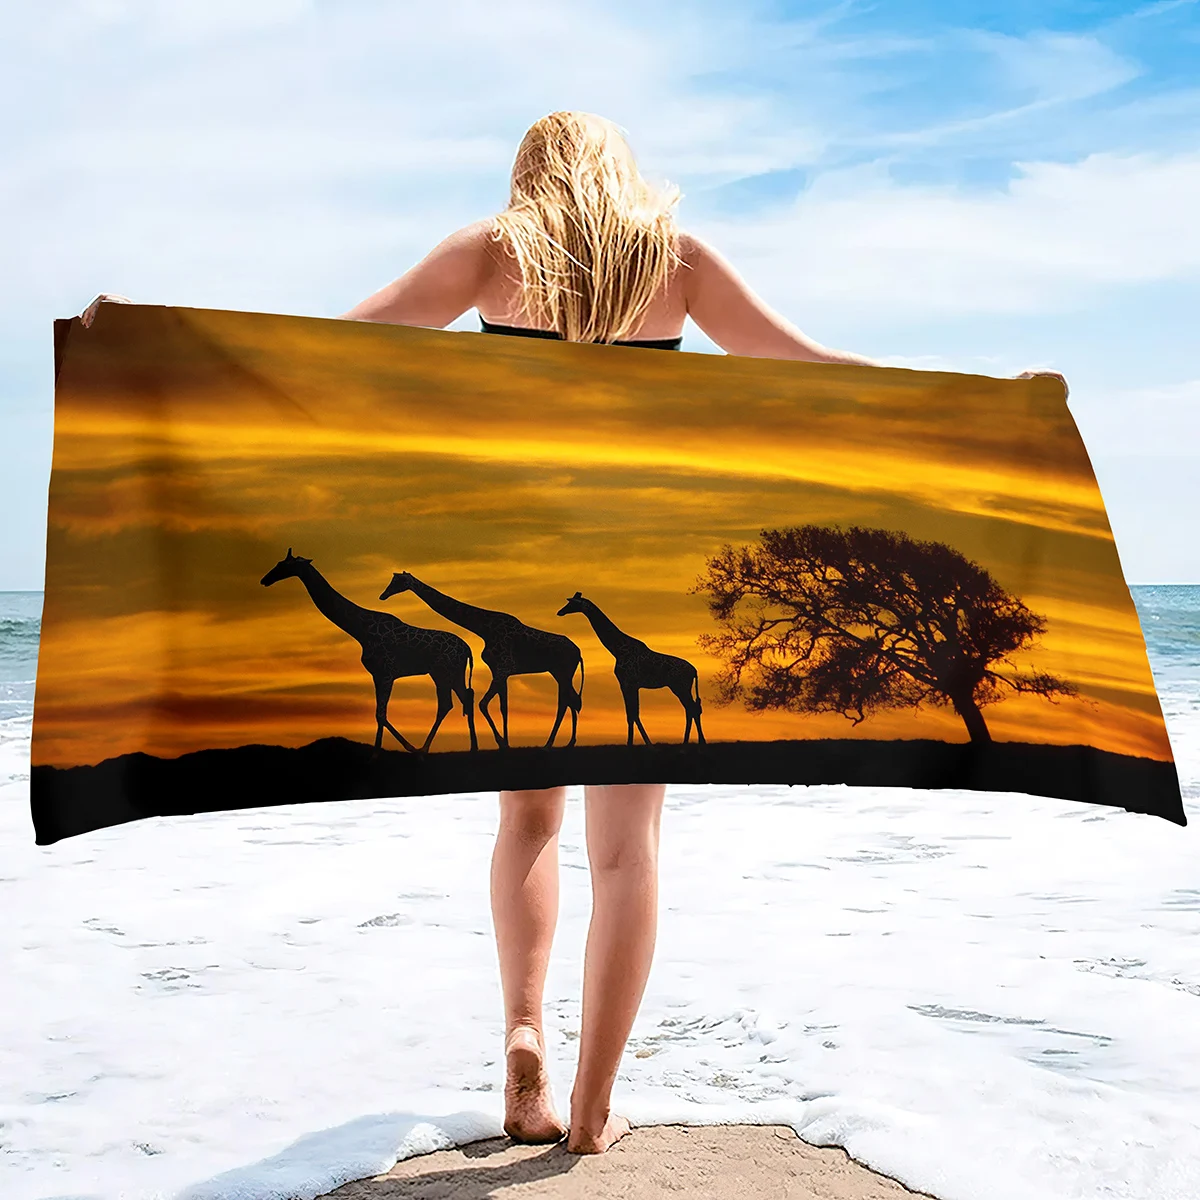 

Пляжное полотенце в виде жирафа для женщин, девочек, детей, мужчин, банное полотенце в виде жирафа, полотенце для бассейна с принтом, мягкое плюшевое полотенце в виде жирафа для любителей животных